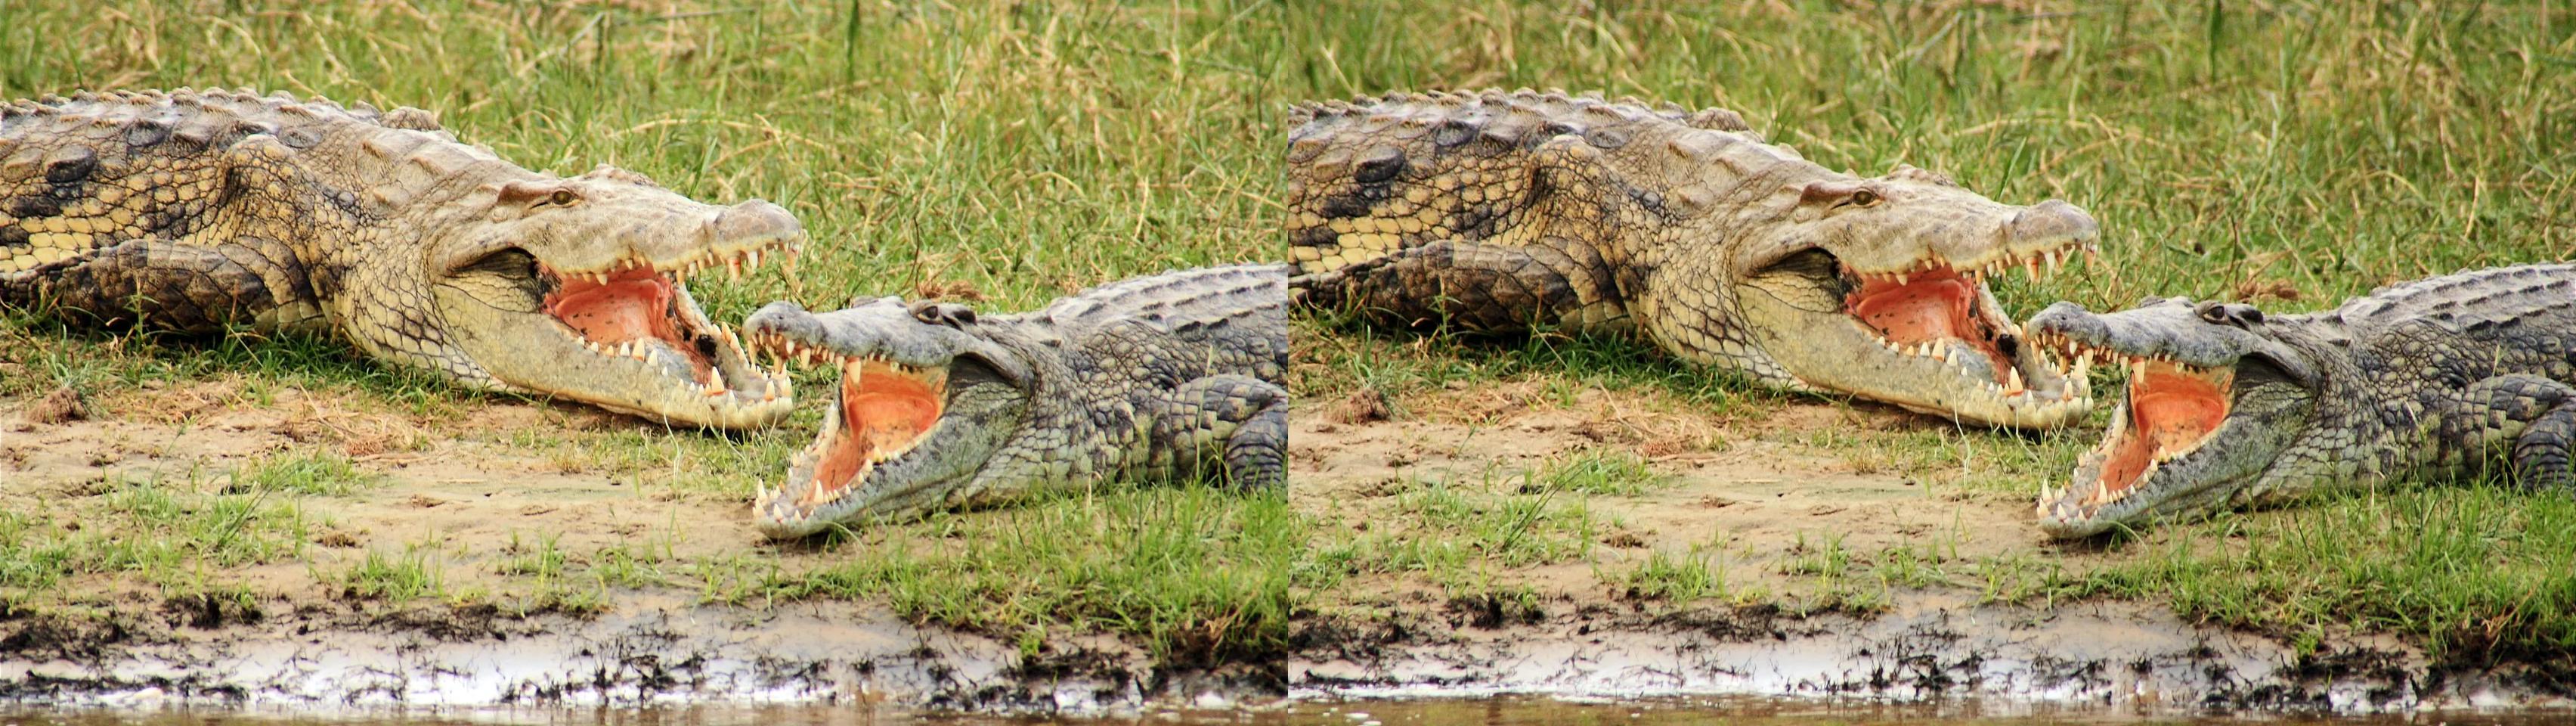 Crocodiles on the Nile, Uganda